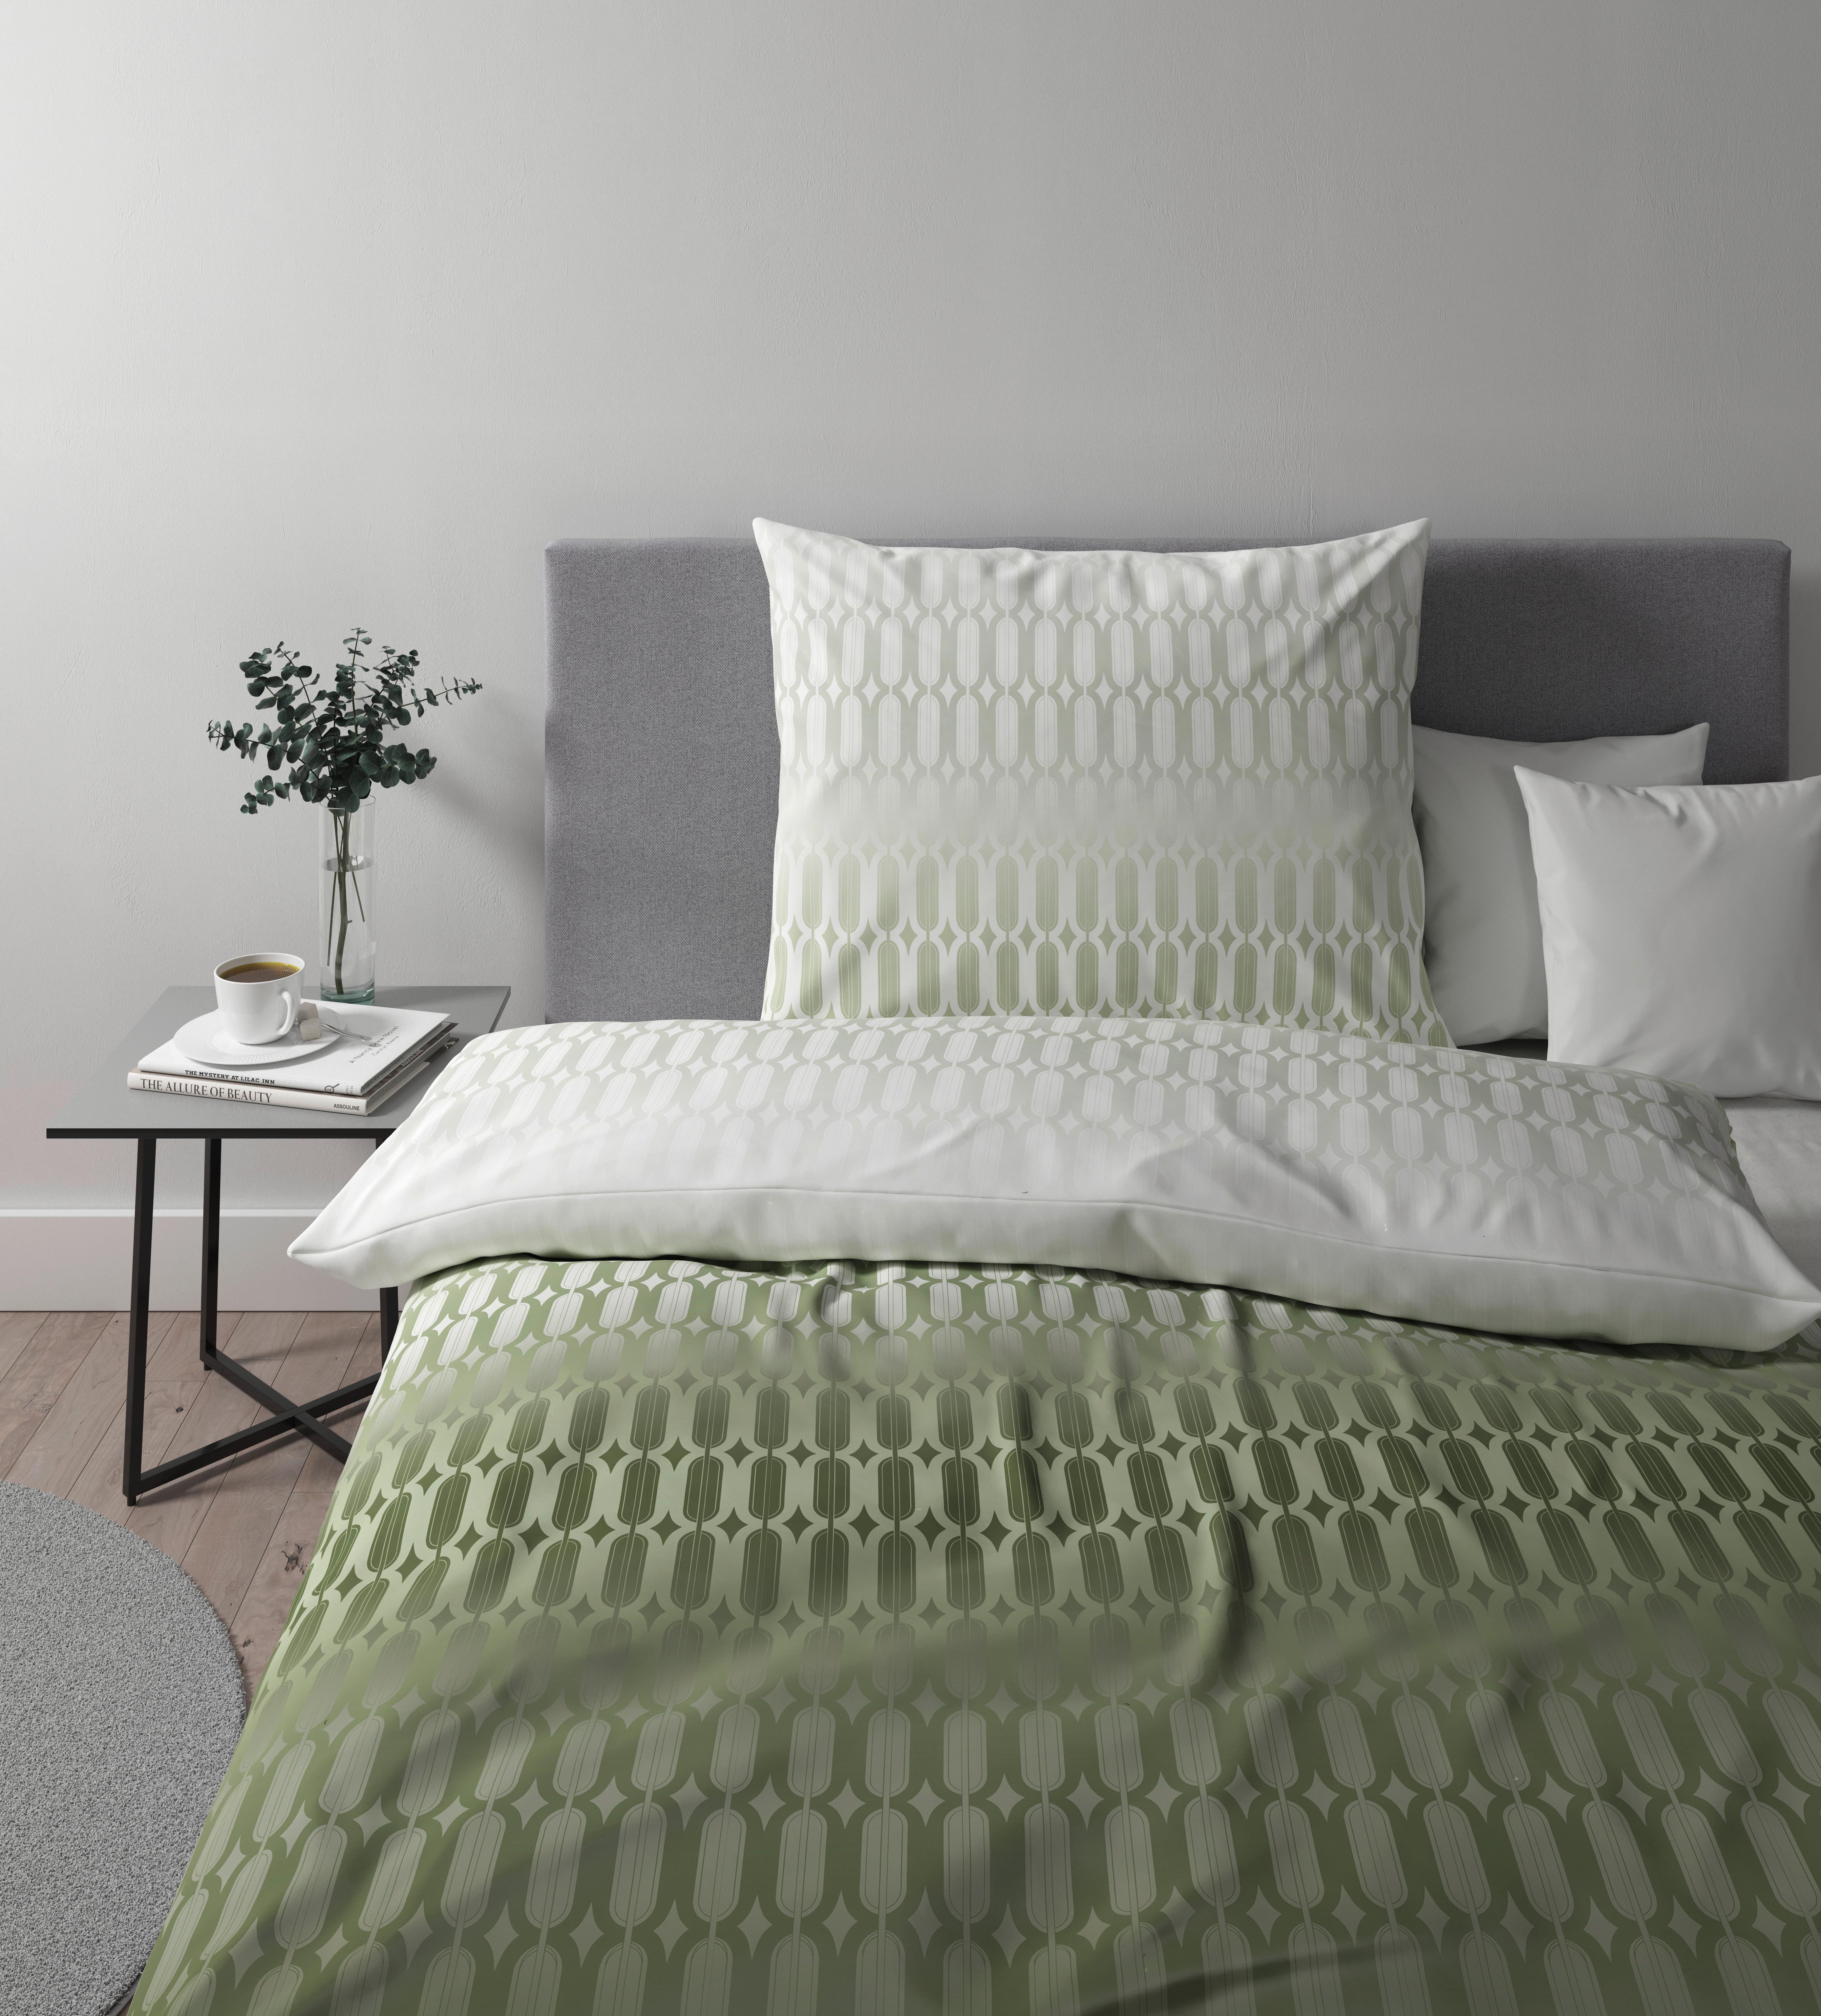 Posteljnina Picol - zelena/olivno zelena , Moderno, tekstil (140/200cm) - Premium Living